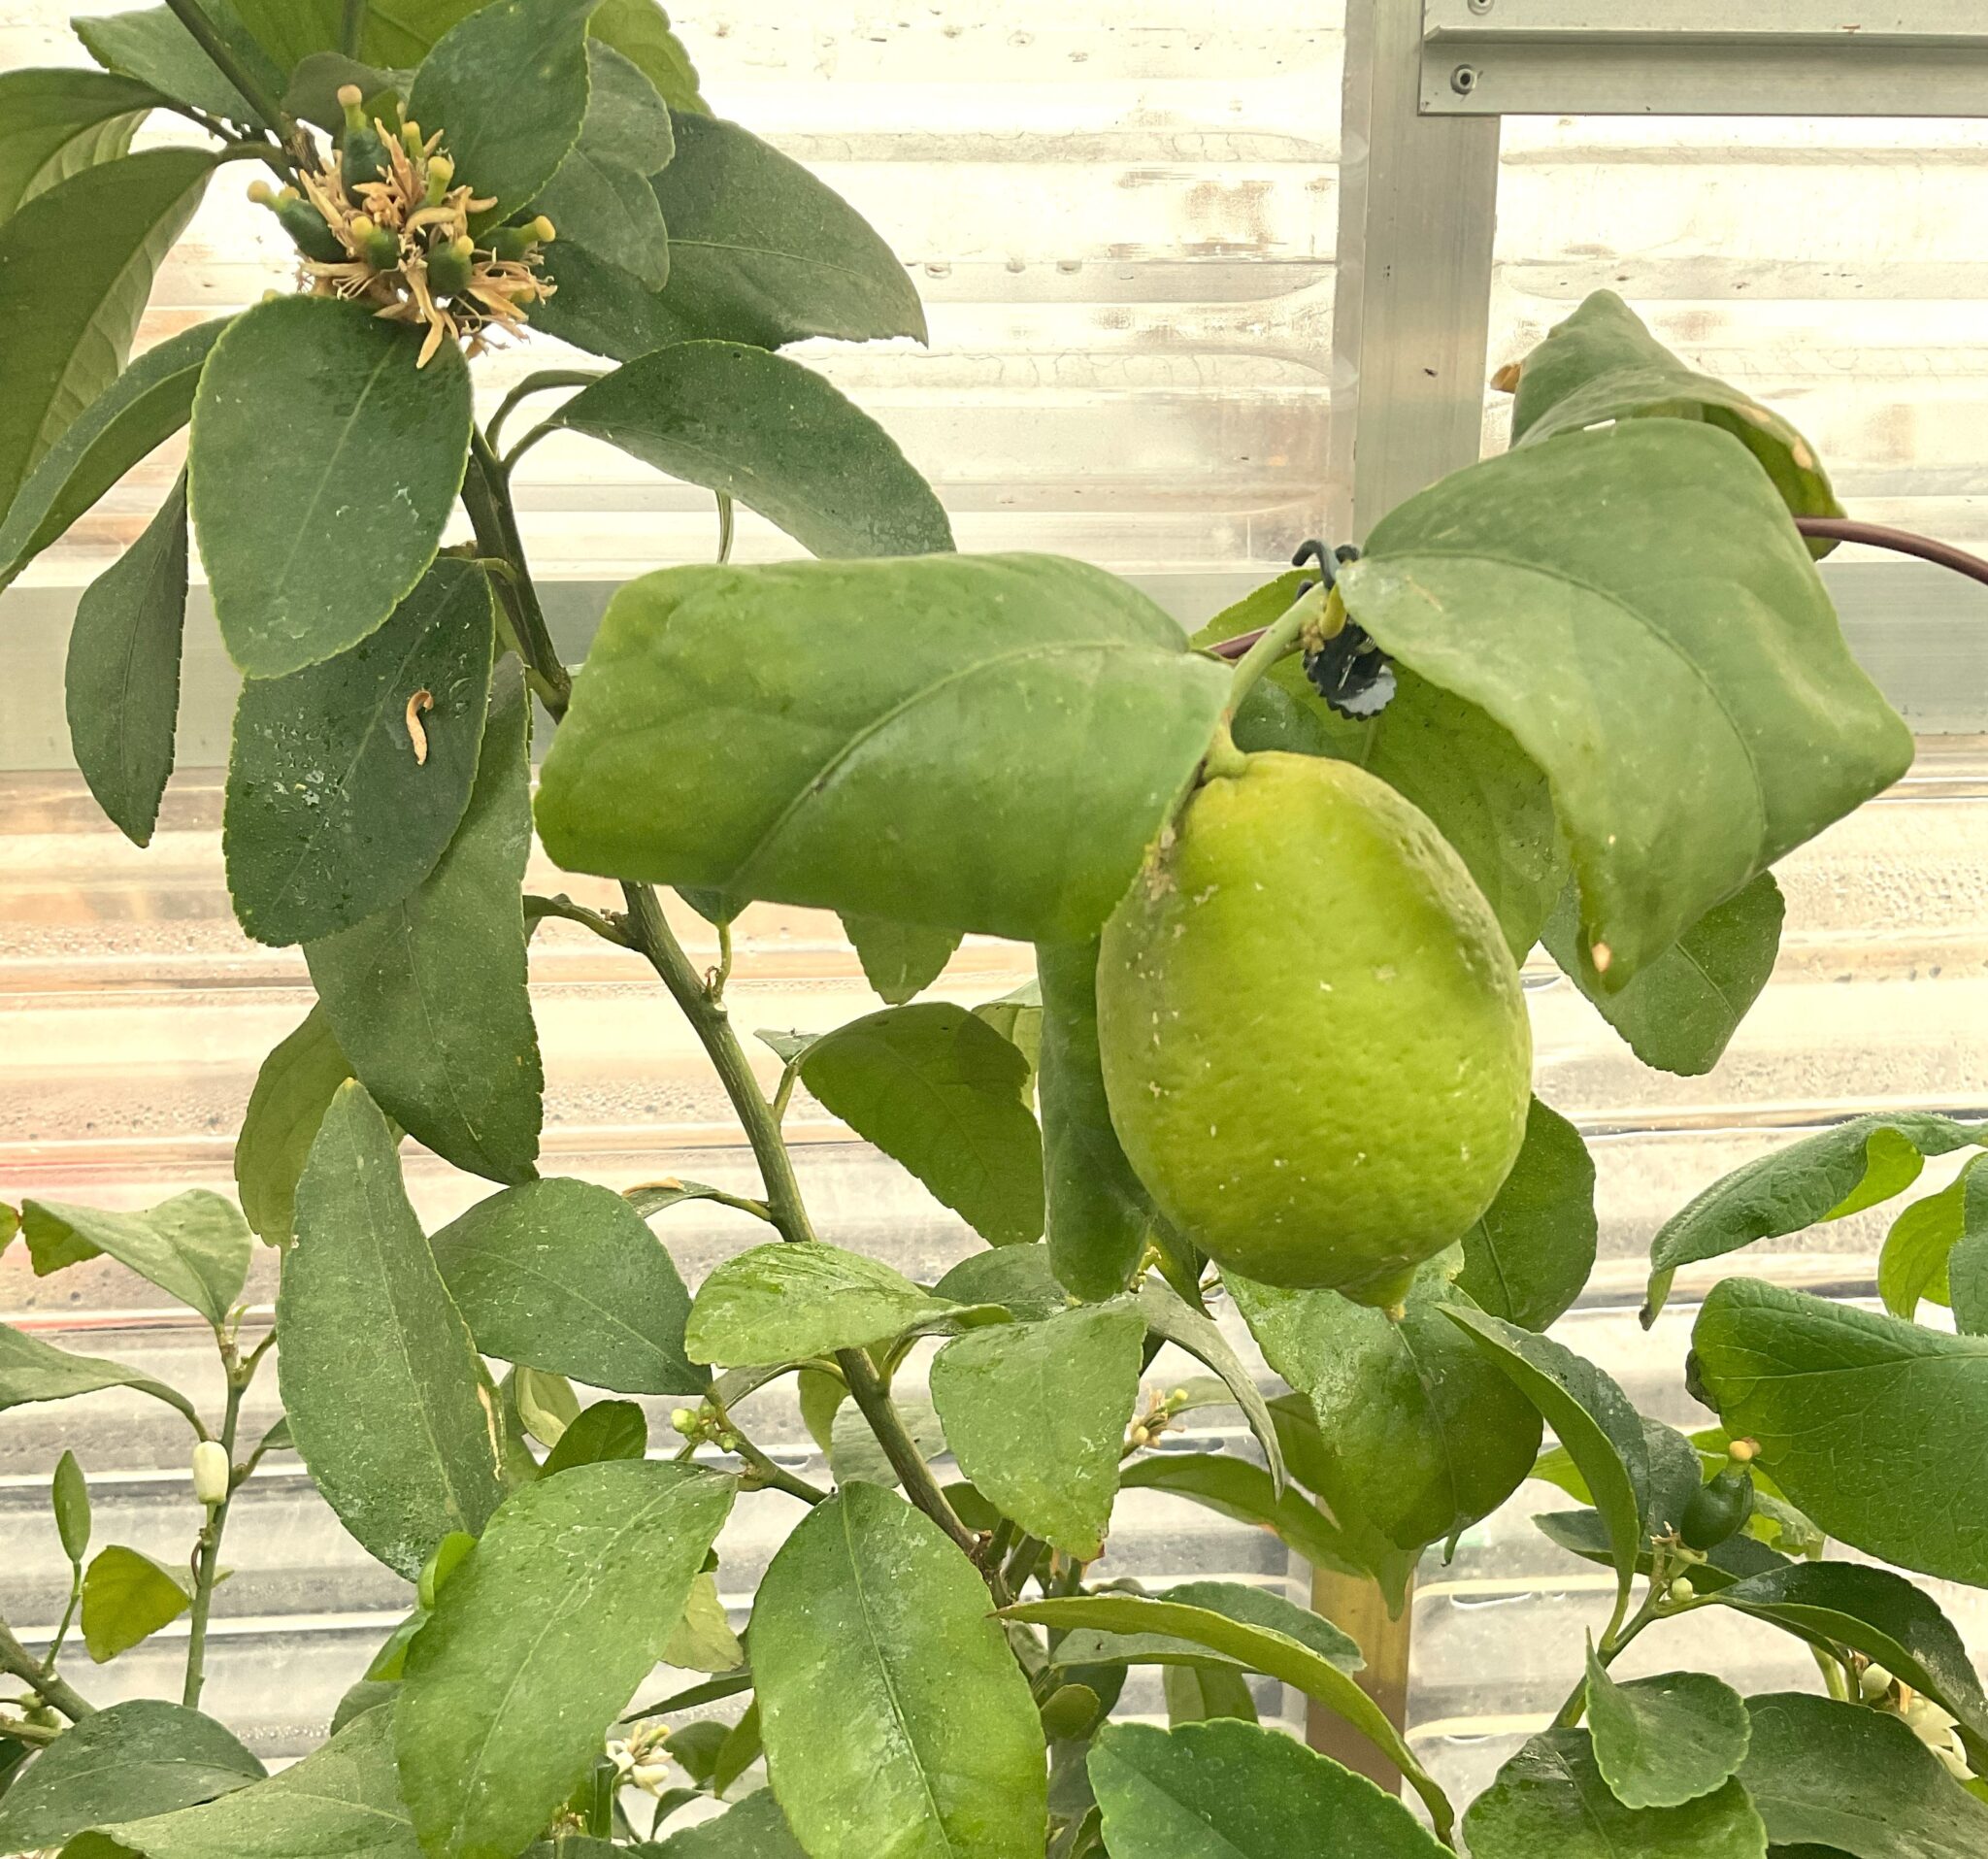 Growing a Lemon tree inside a sunglo greenhouse